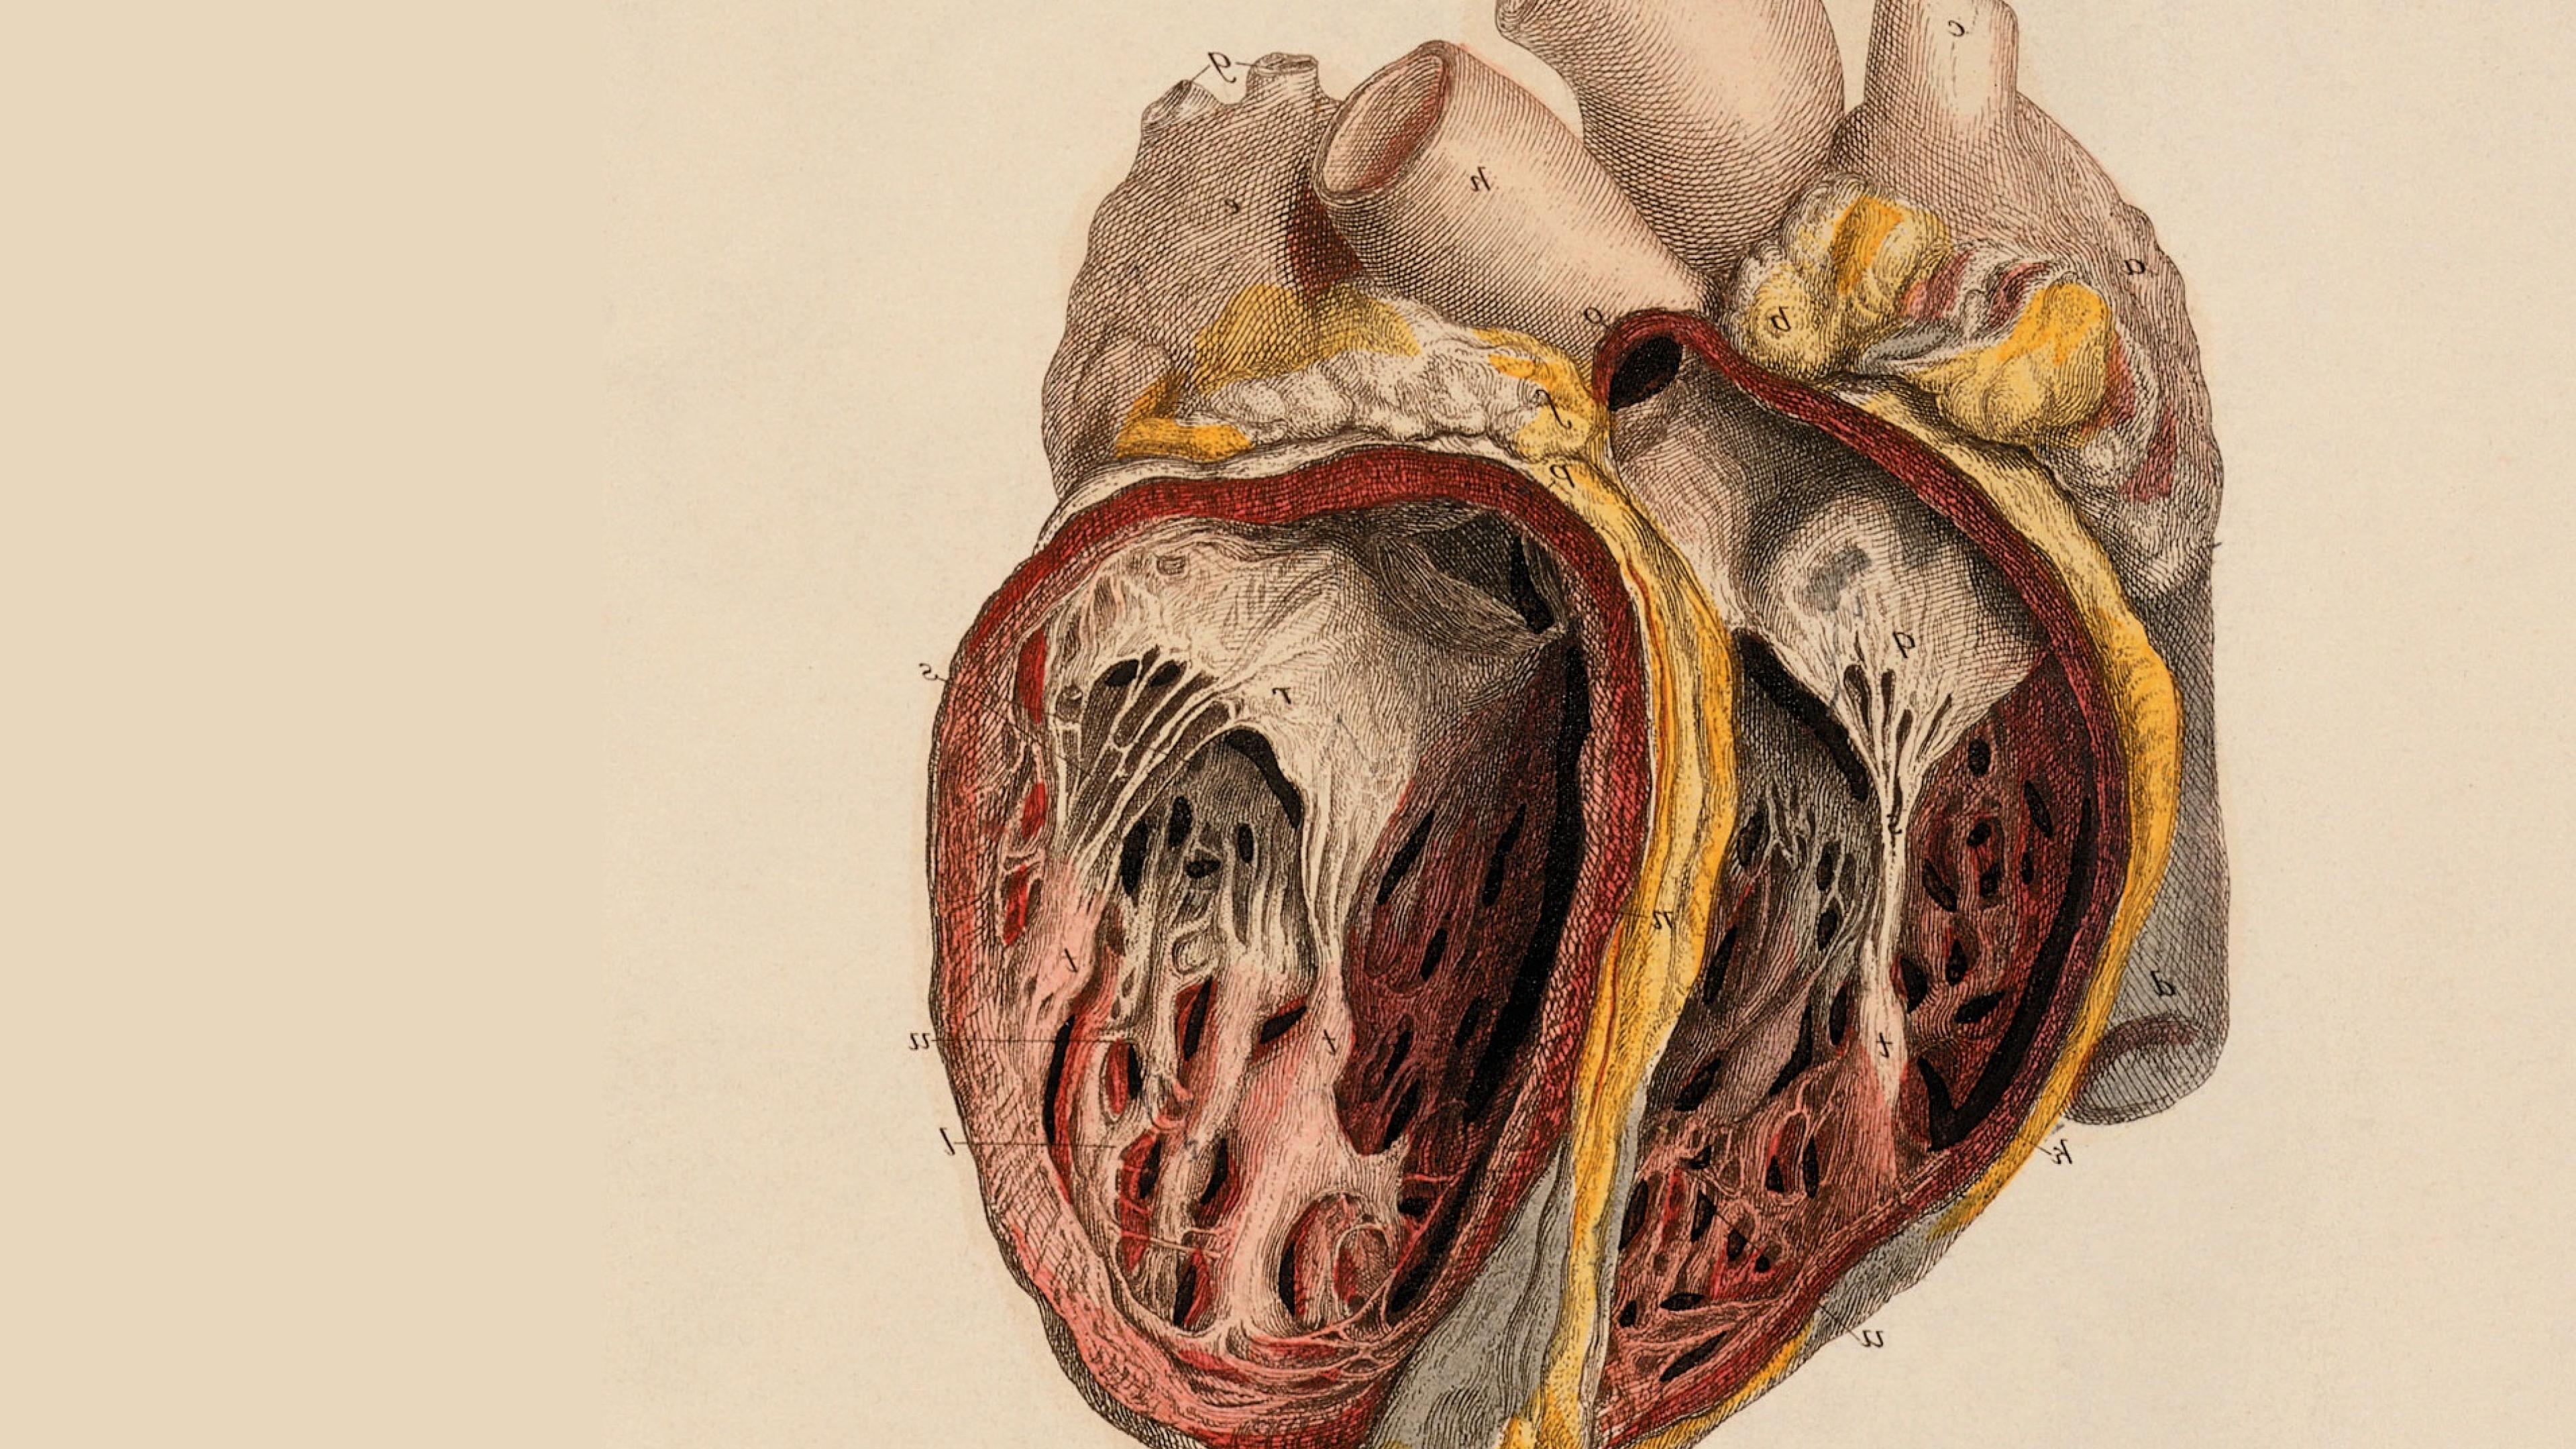 fond d'écran de l'anatomie humaine,anatomie humaine,corps humain,cœur,la chair,illustration